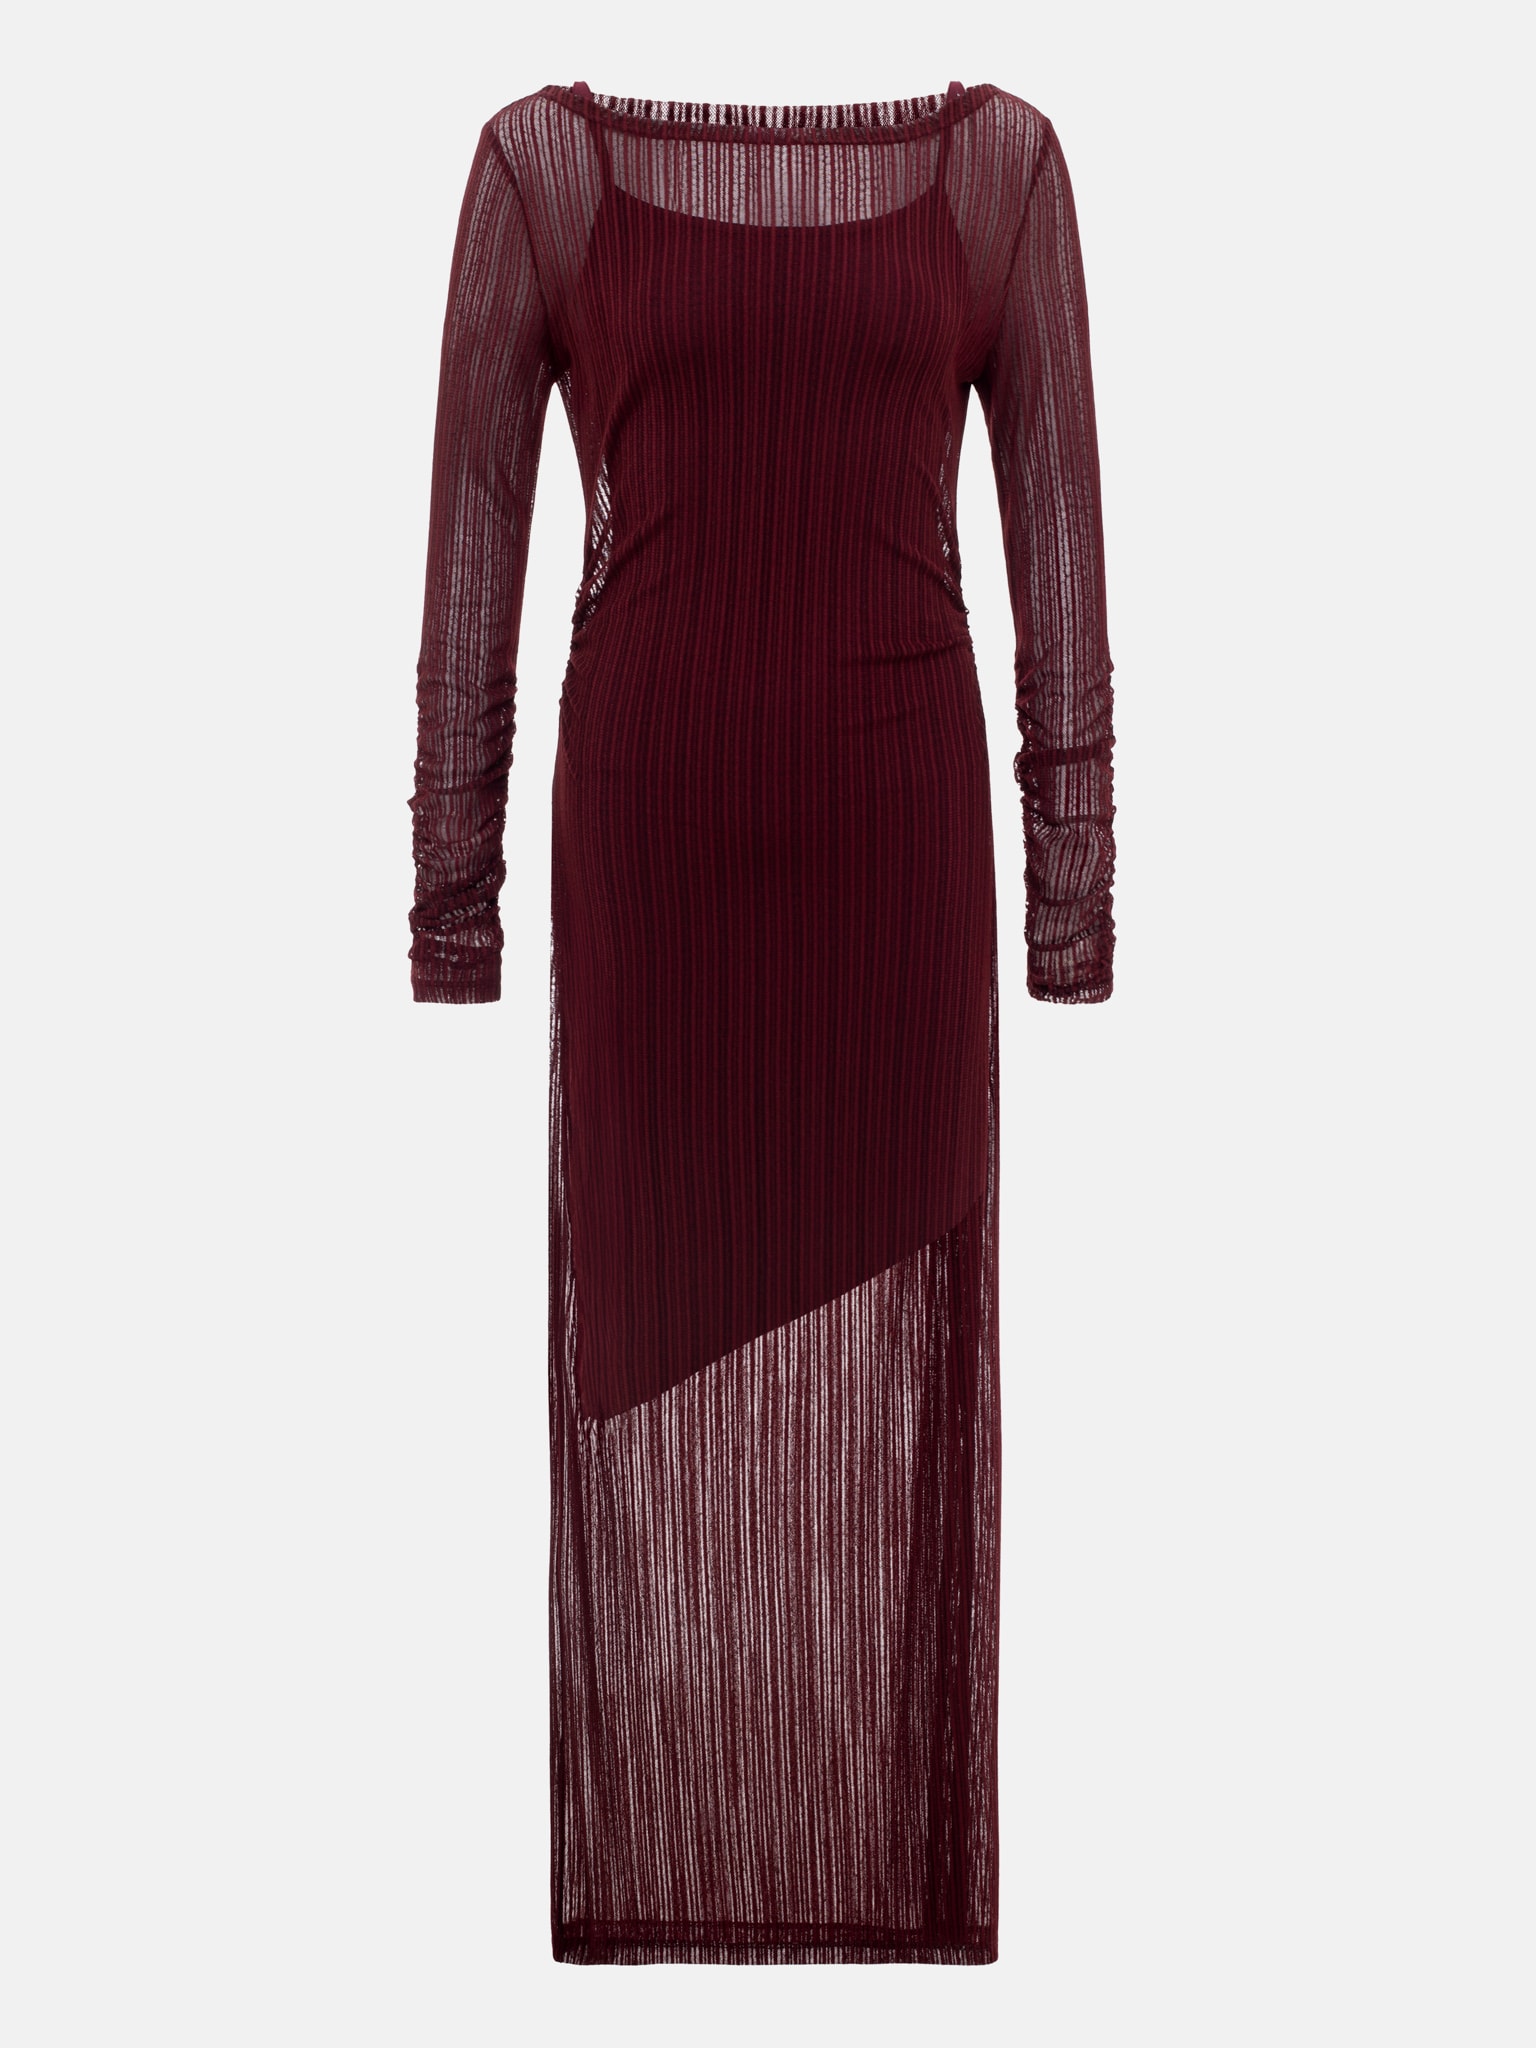 Приталенное платье макси из фактурной полупрозрачной ткани